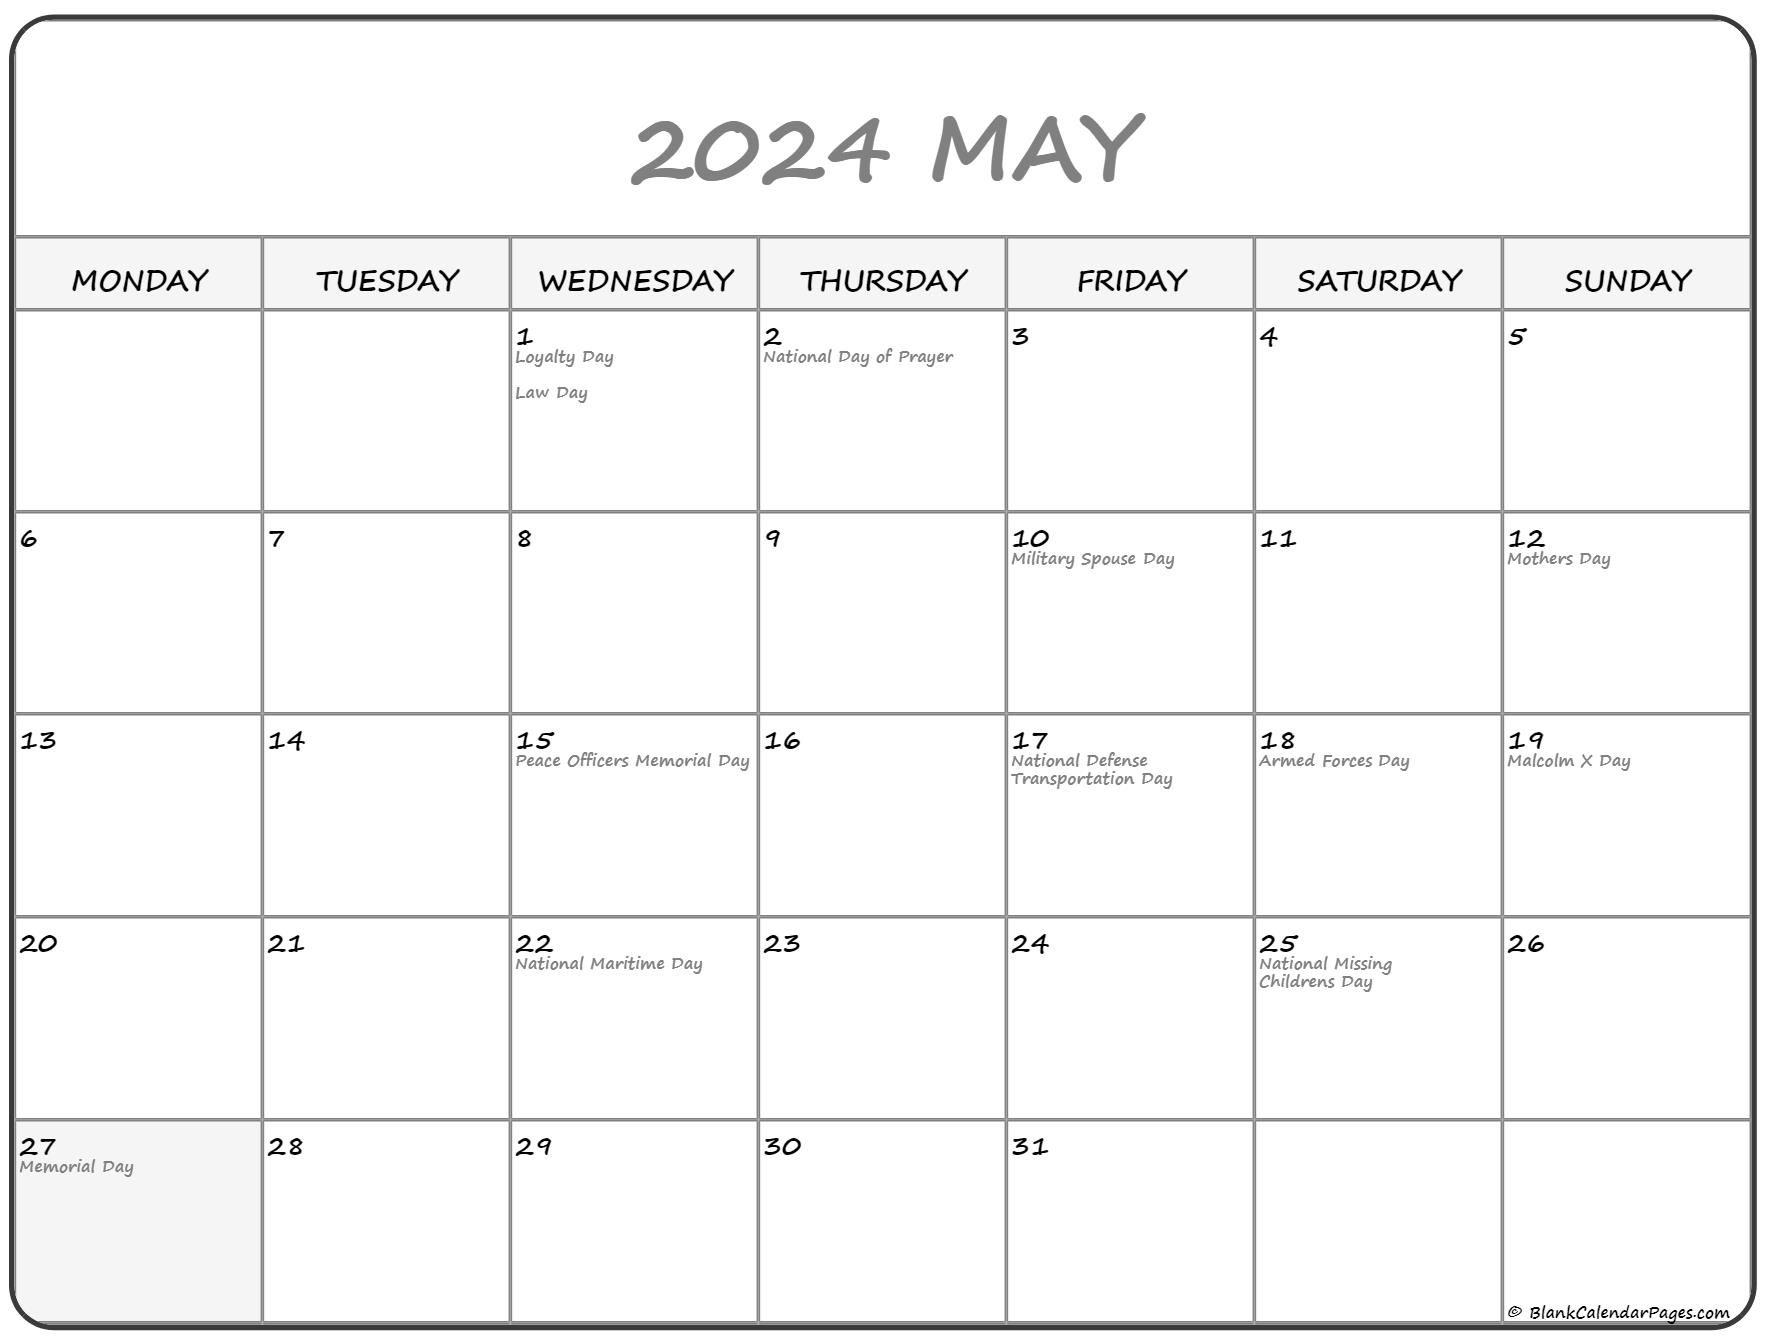 may-2023-calendar-starting-monday-get-calendar-2023-update